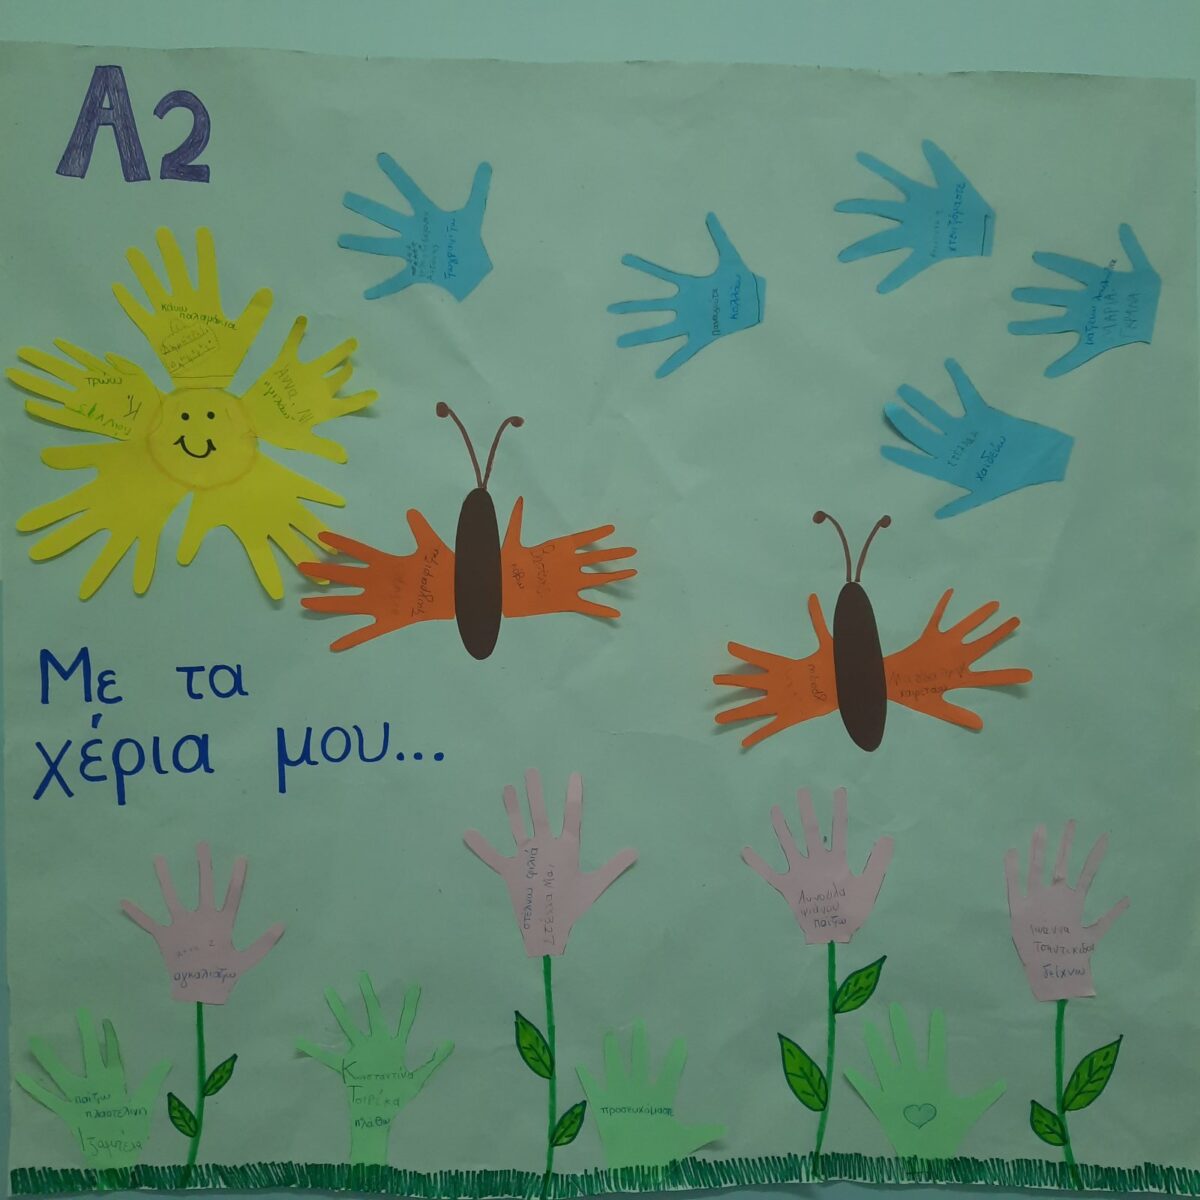 Δημιουργία αφίσας από τους μαθητές του Α2′ τμήματος